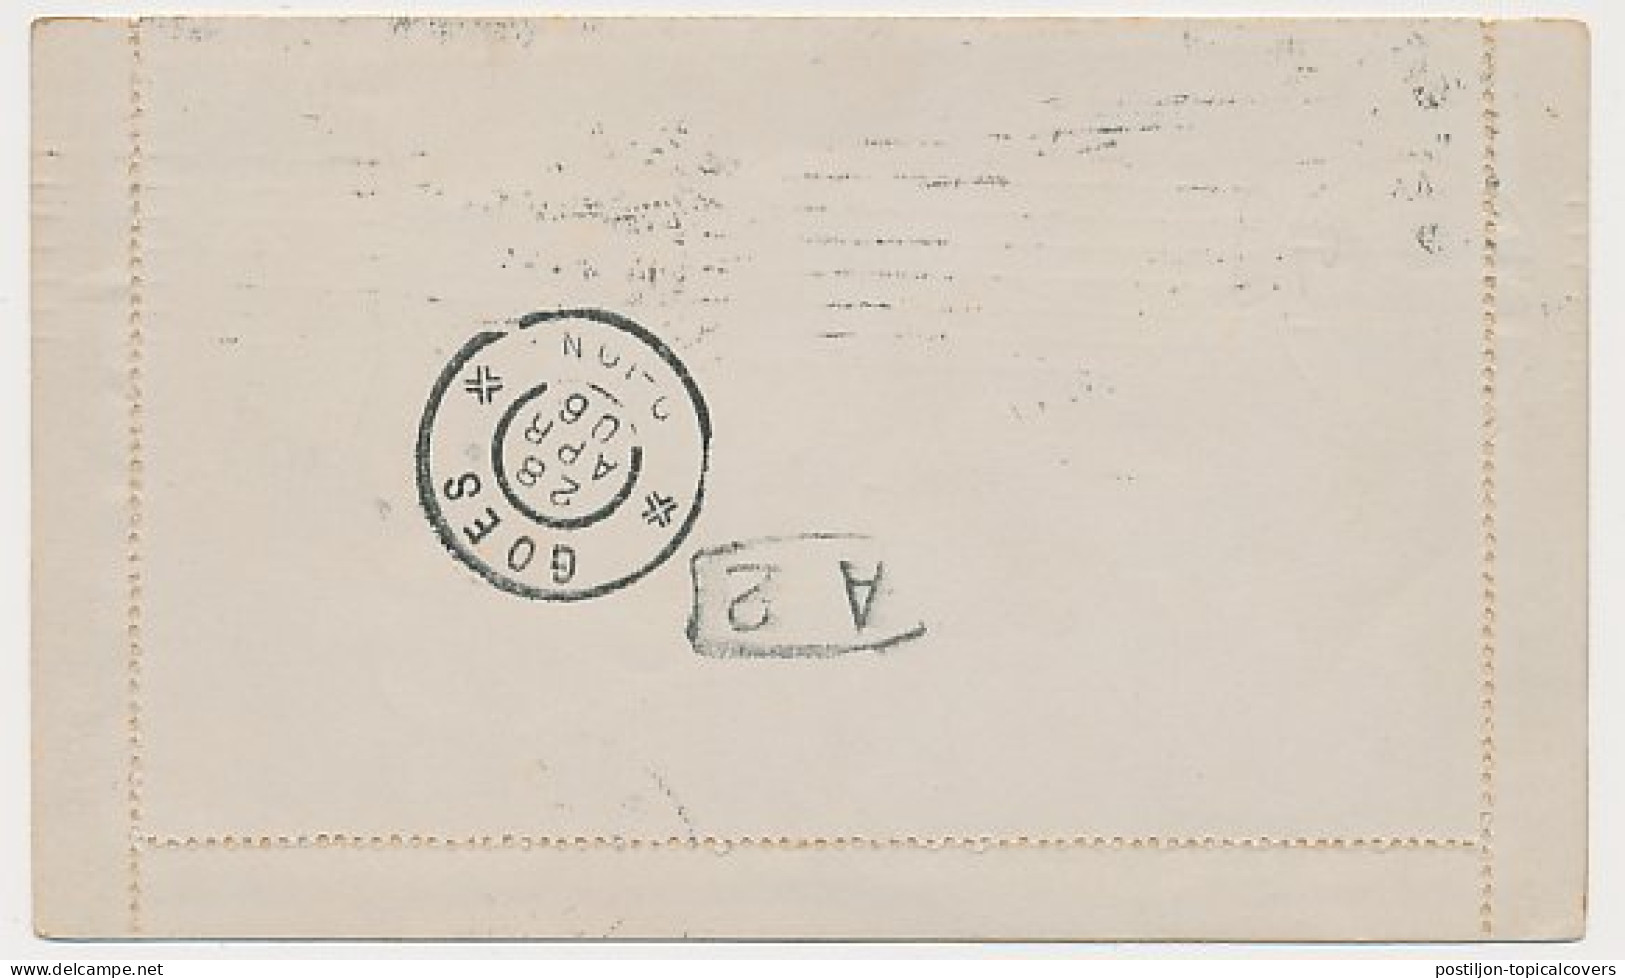 Postblad G. 5 Y S Gravenhage - Goes 1903 - Entiers Postaux